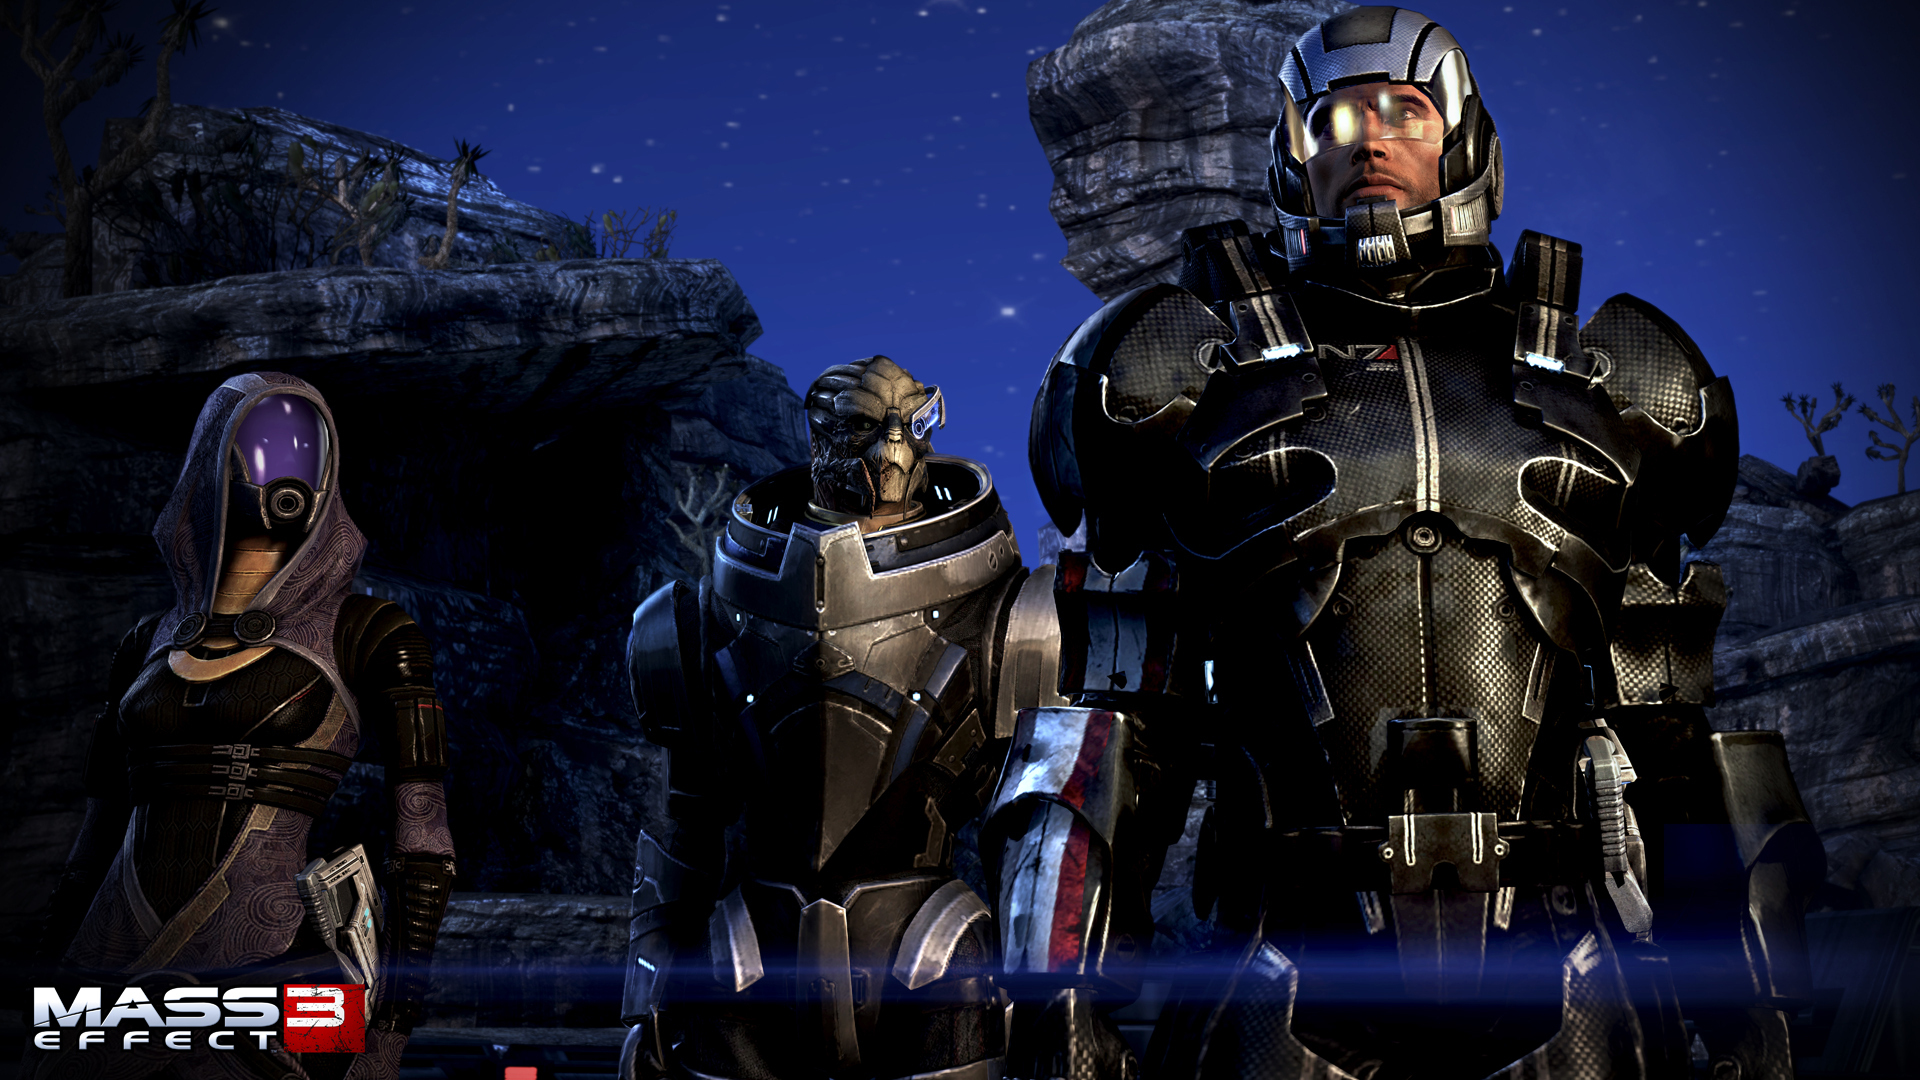 Wallpaper Mass Effect Mass Effect 3 vdeo game Games